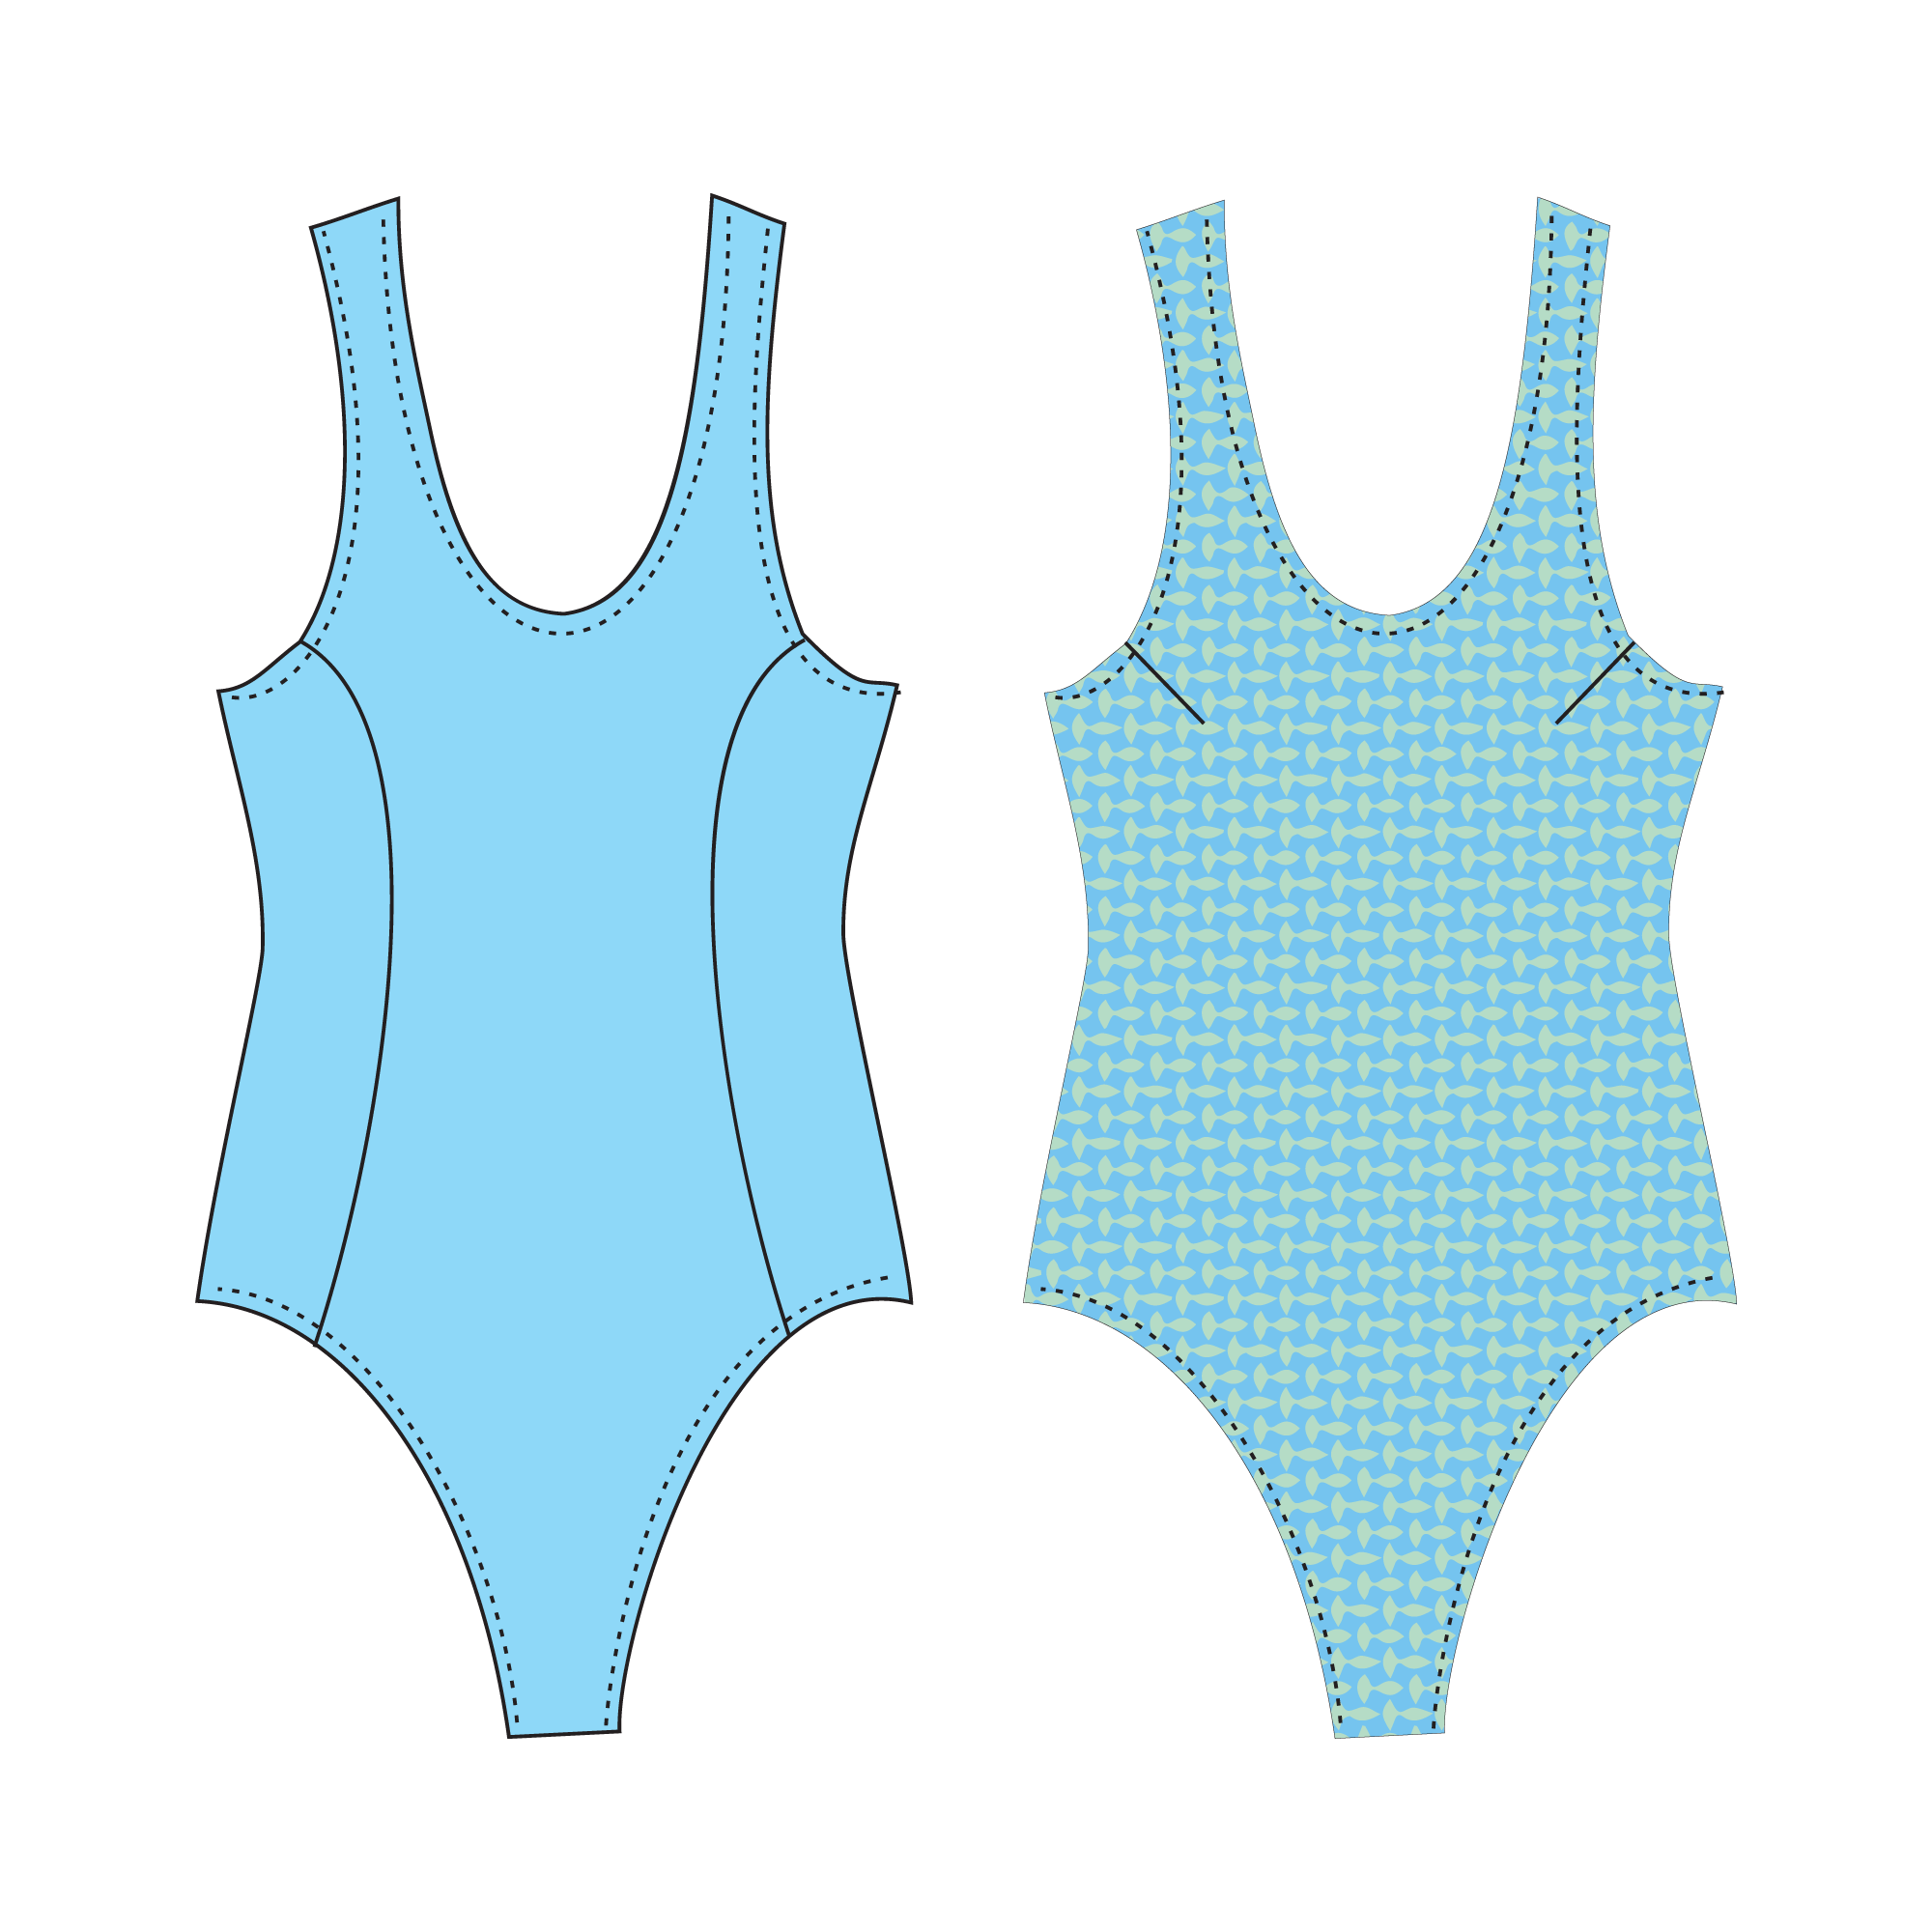 swimwear drawing templates